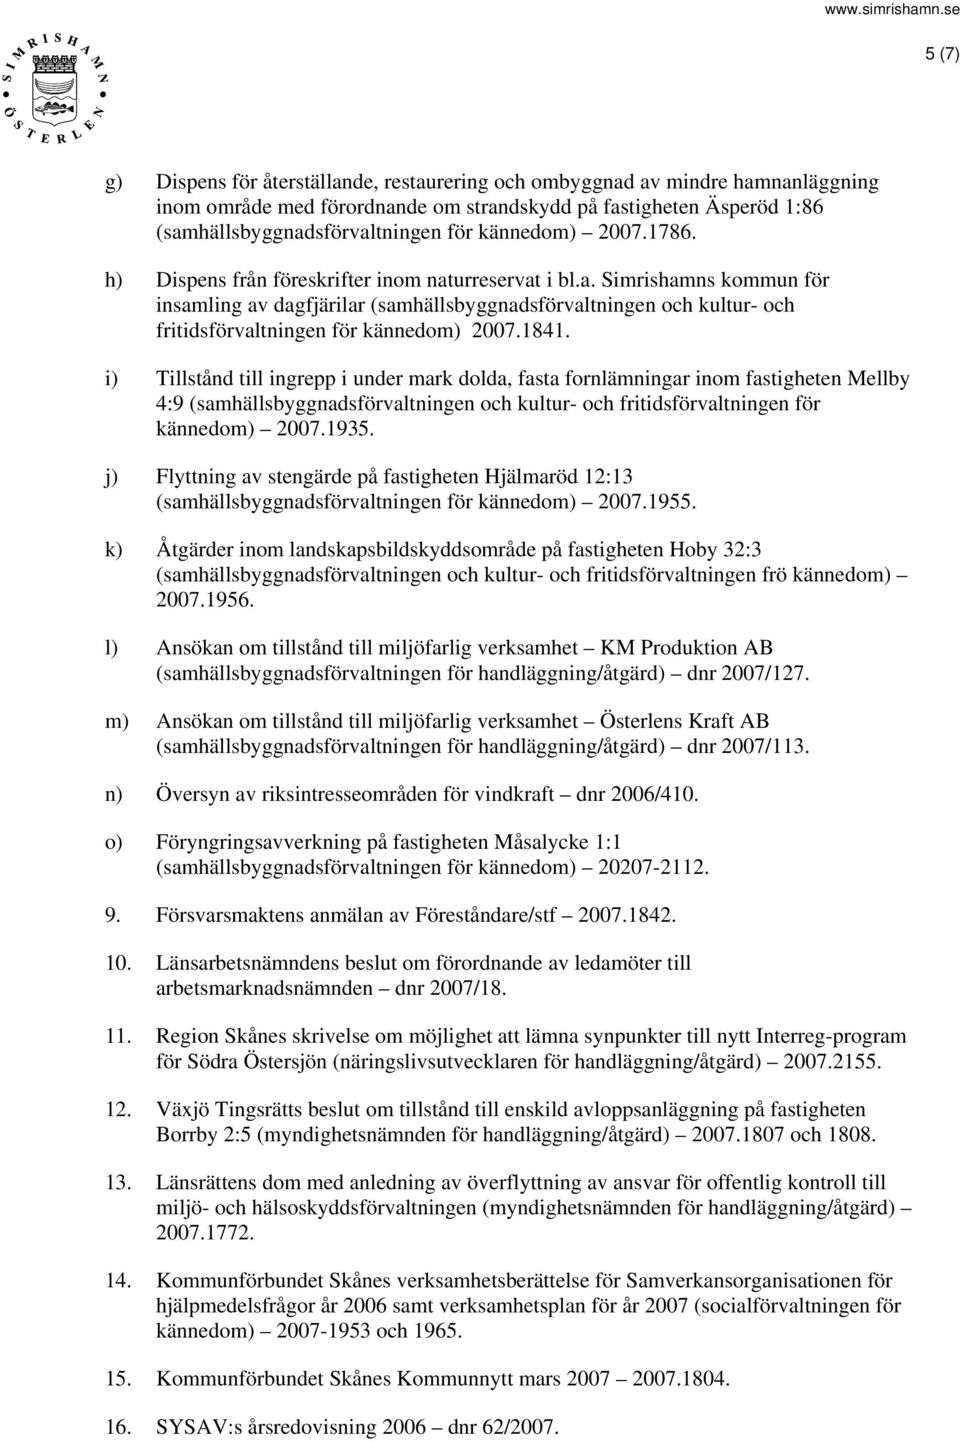 1841. i) Tillstånd till ingrepp i under mark dolda, fasta fornlämningar inom fastigheten Mellby 4:9 (samhällsbyggnadsförvaltningen och kultur- och fritidsförvaltningen för kännedom) 2007.1935.